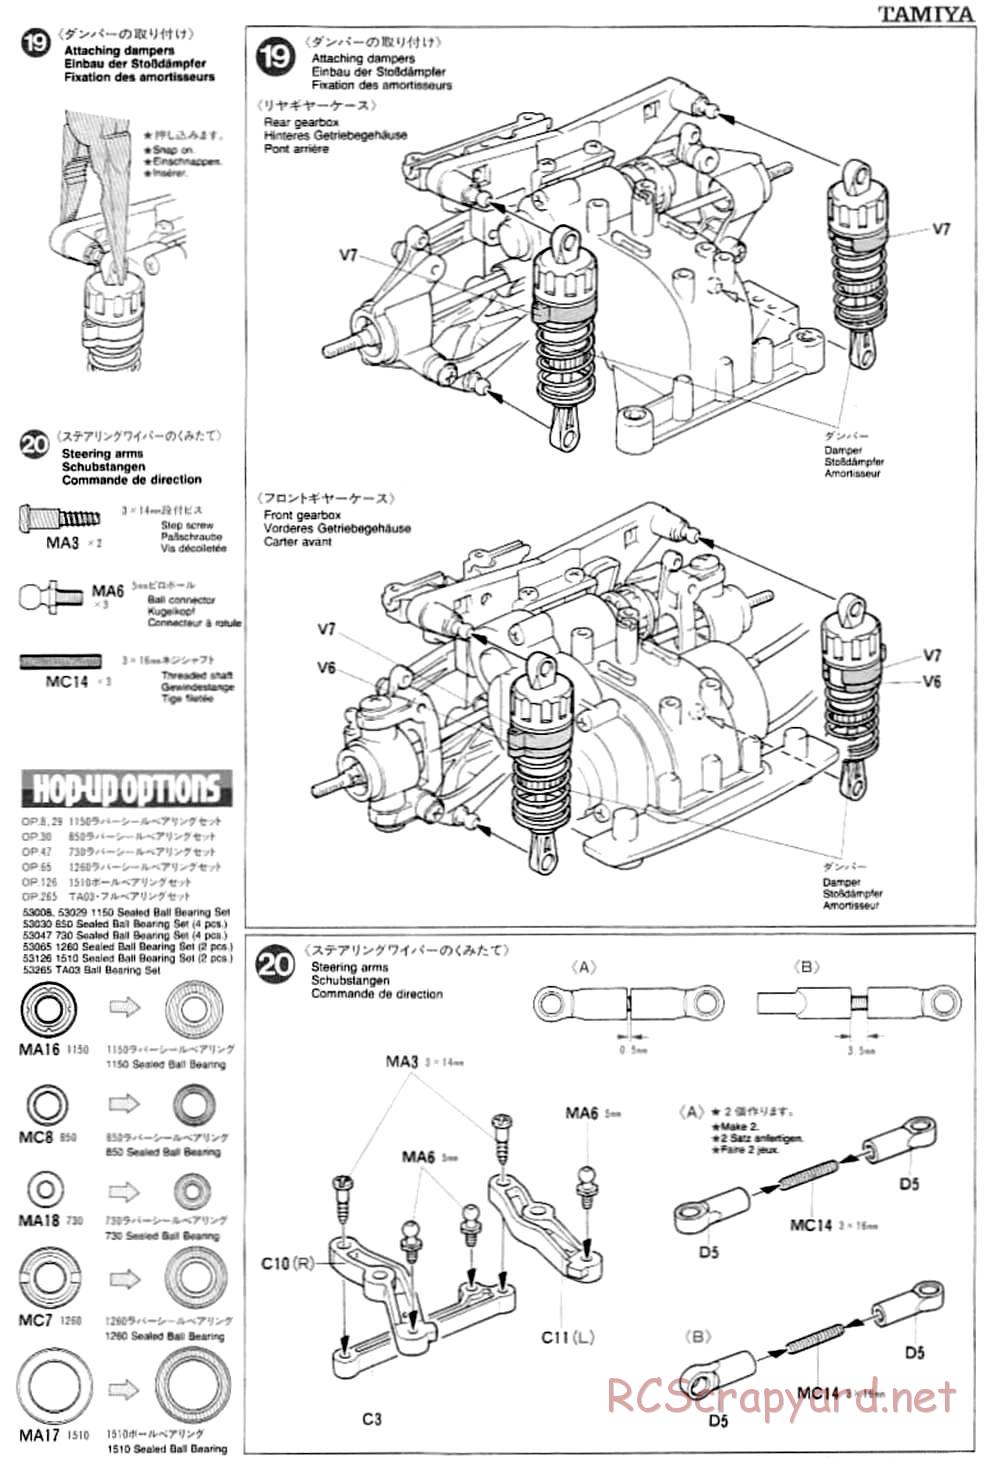 Tamiya - TA-03F Chassis - Manual - Page 11